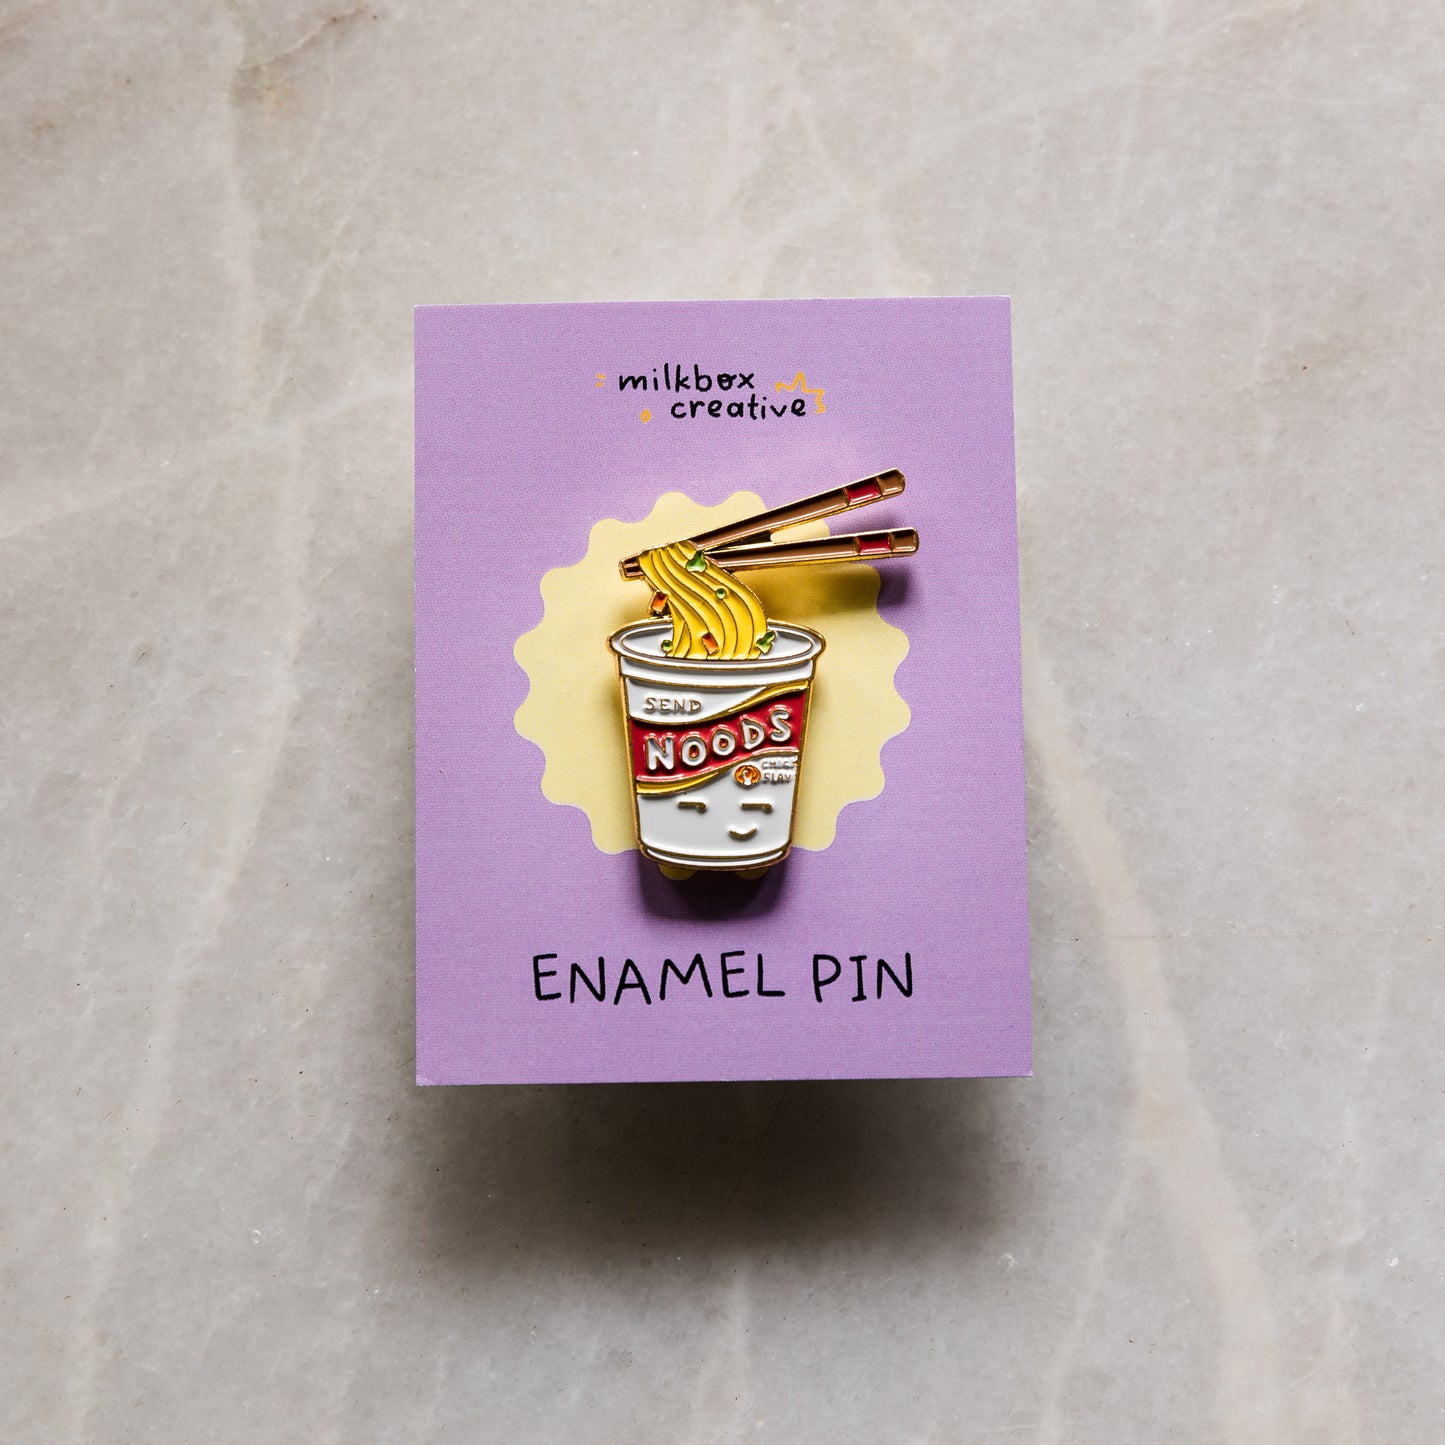 Send Noods Enamel Pin by Cassandra Tan